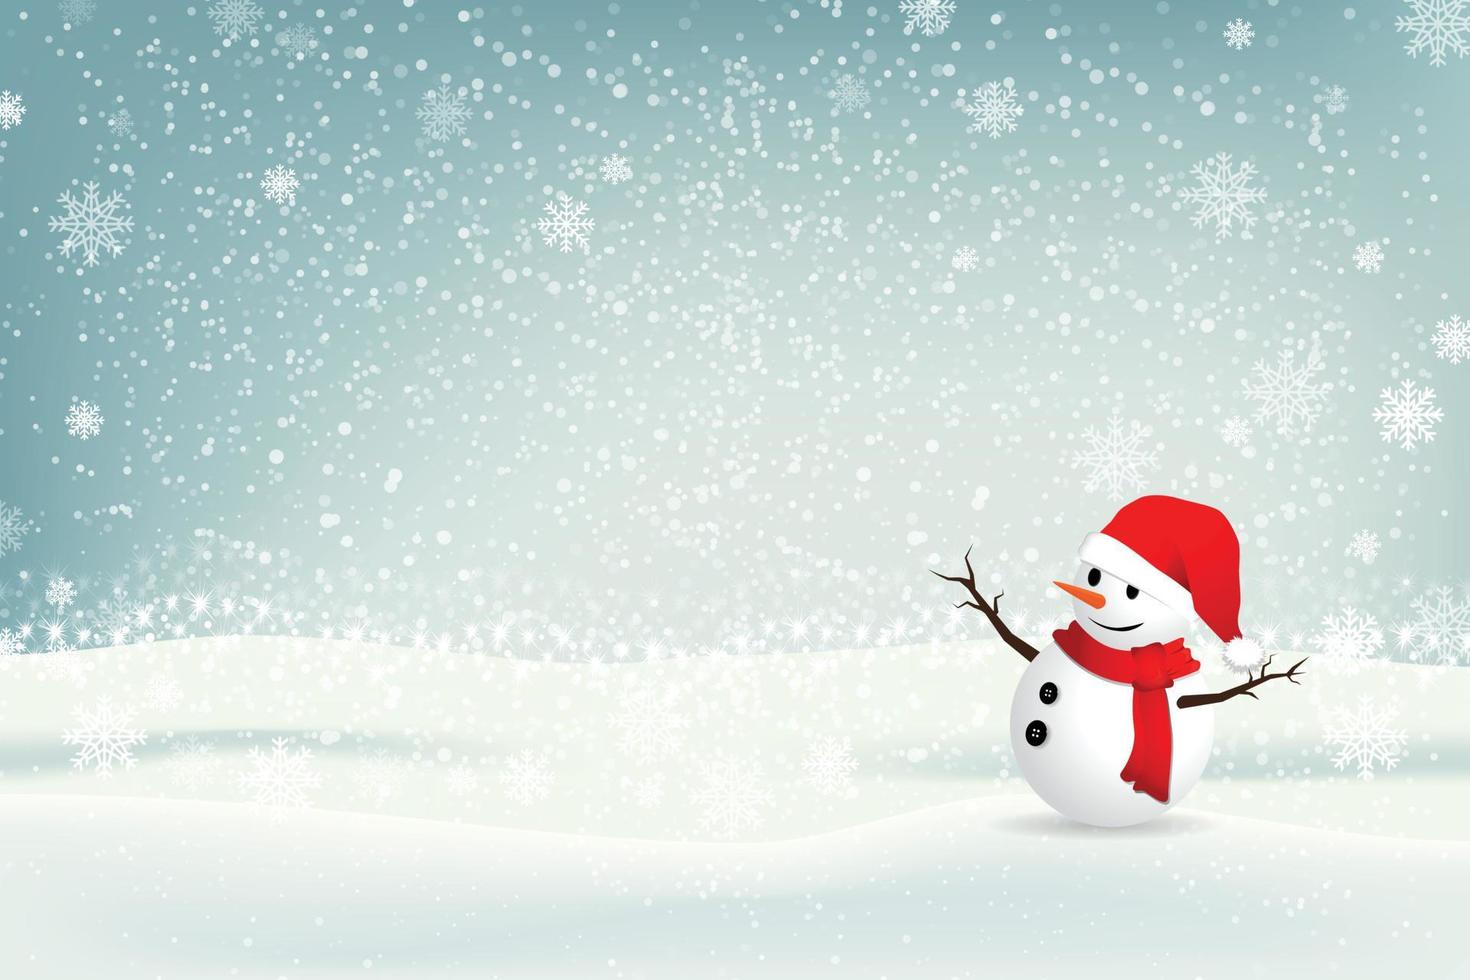 Kerstmis achtergrond met sneeuwman. illustrator vector eps 10.